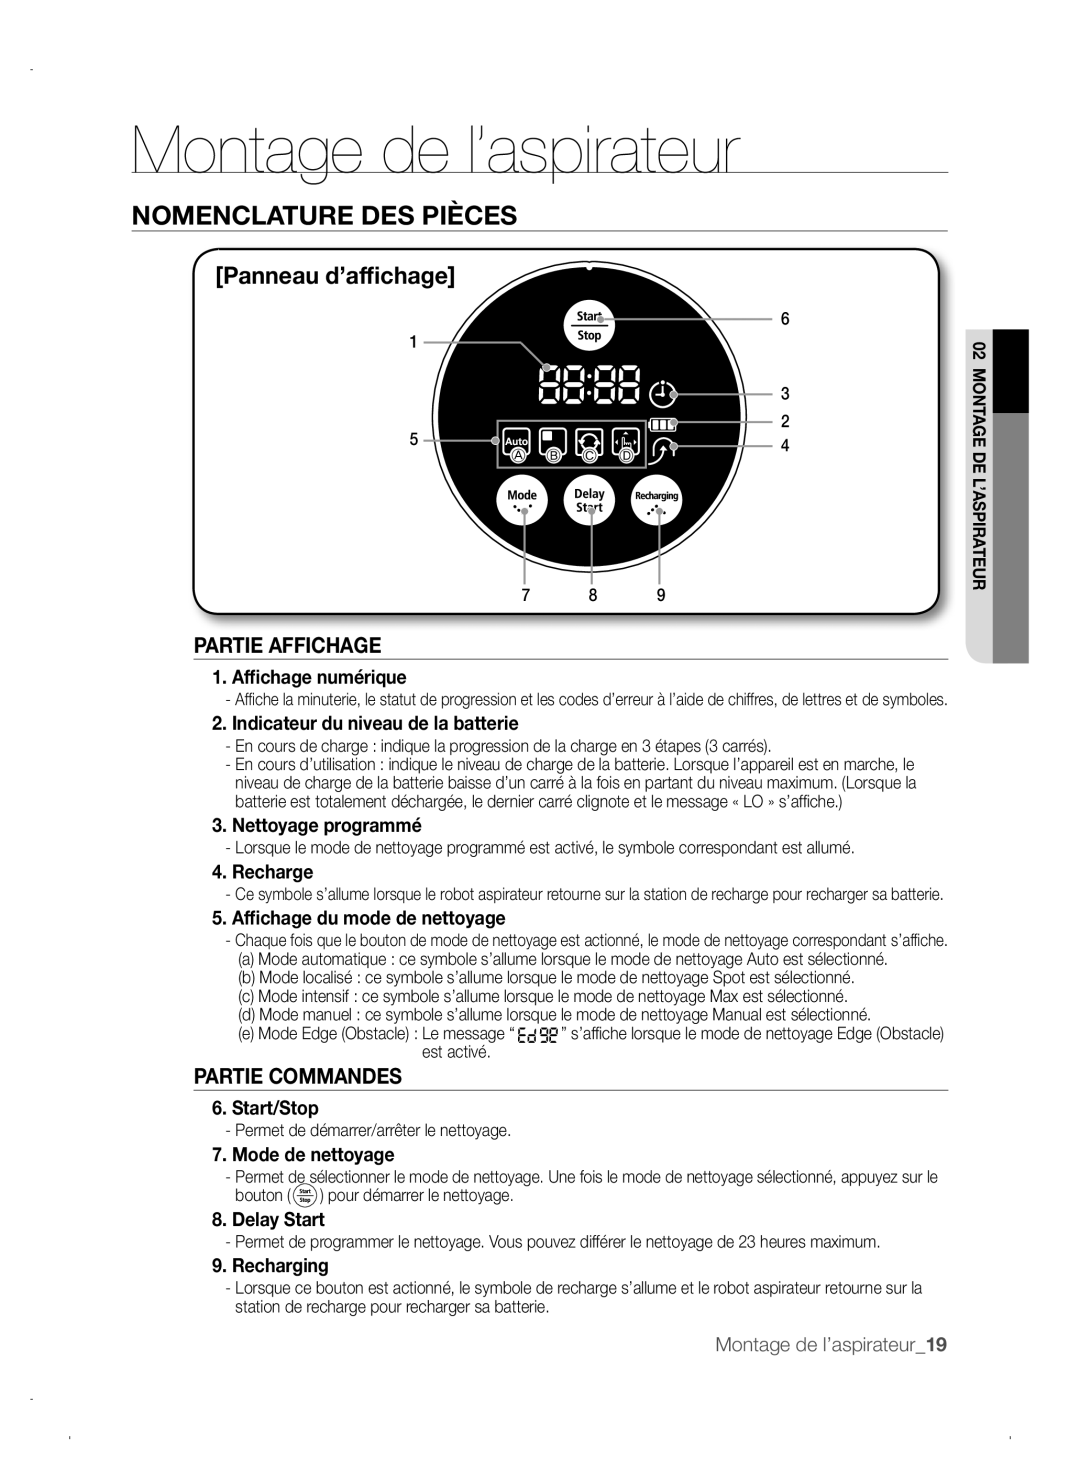 Samsung VCR8845T3A/XET manual Partie Affichage, Partie Commandes, Montage de l’aspirateur, Nomenclature Des Pièces 